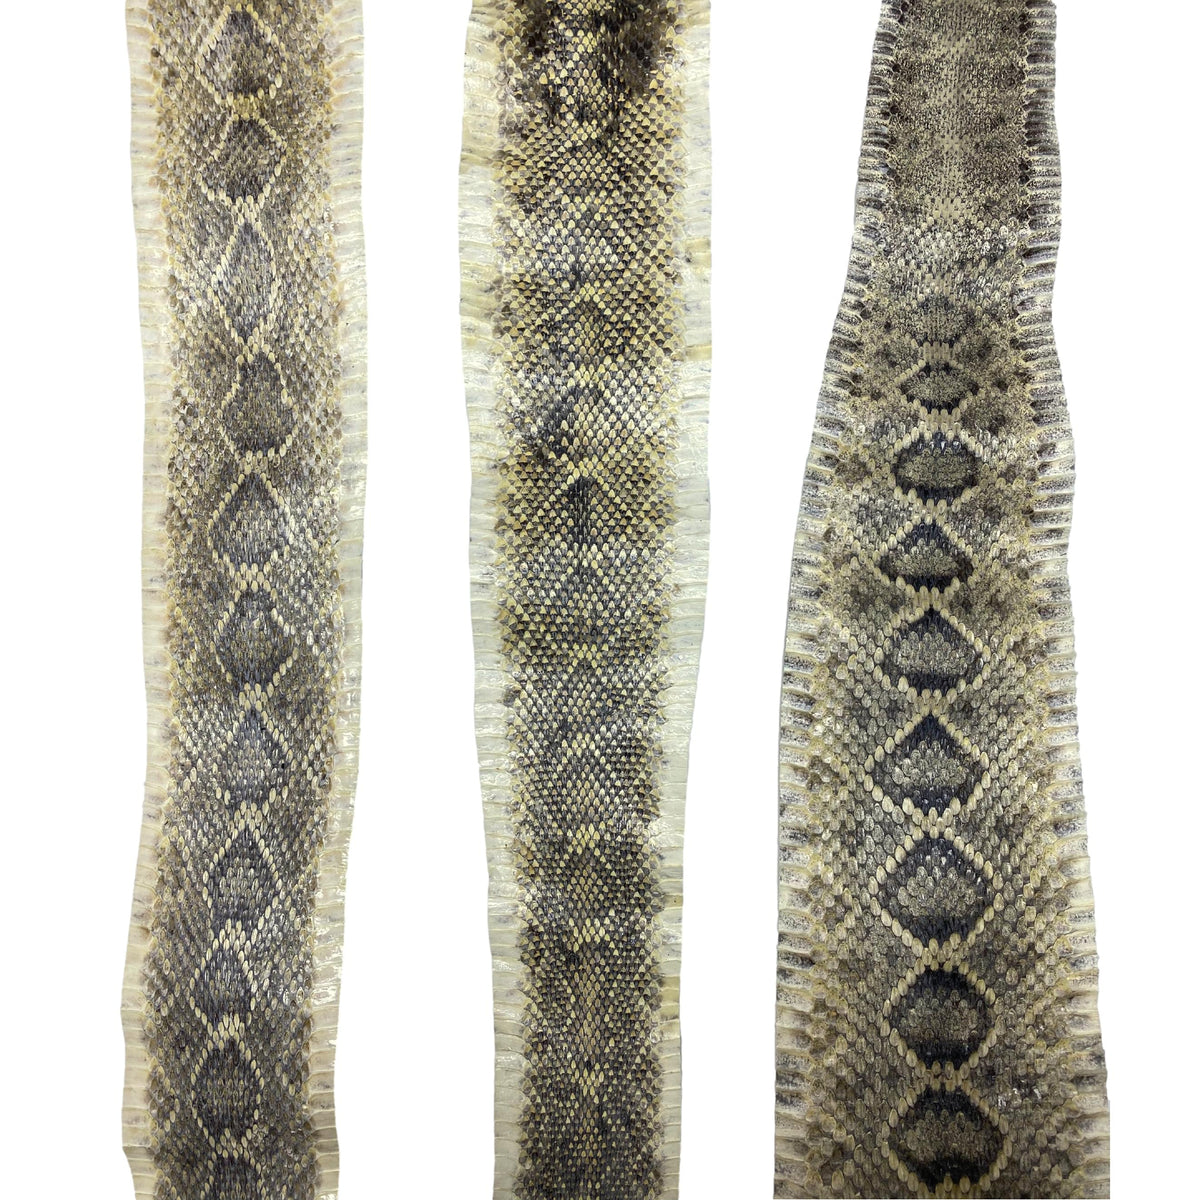 diamondback rattlesnake skin pattern